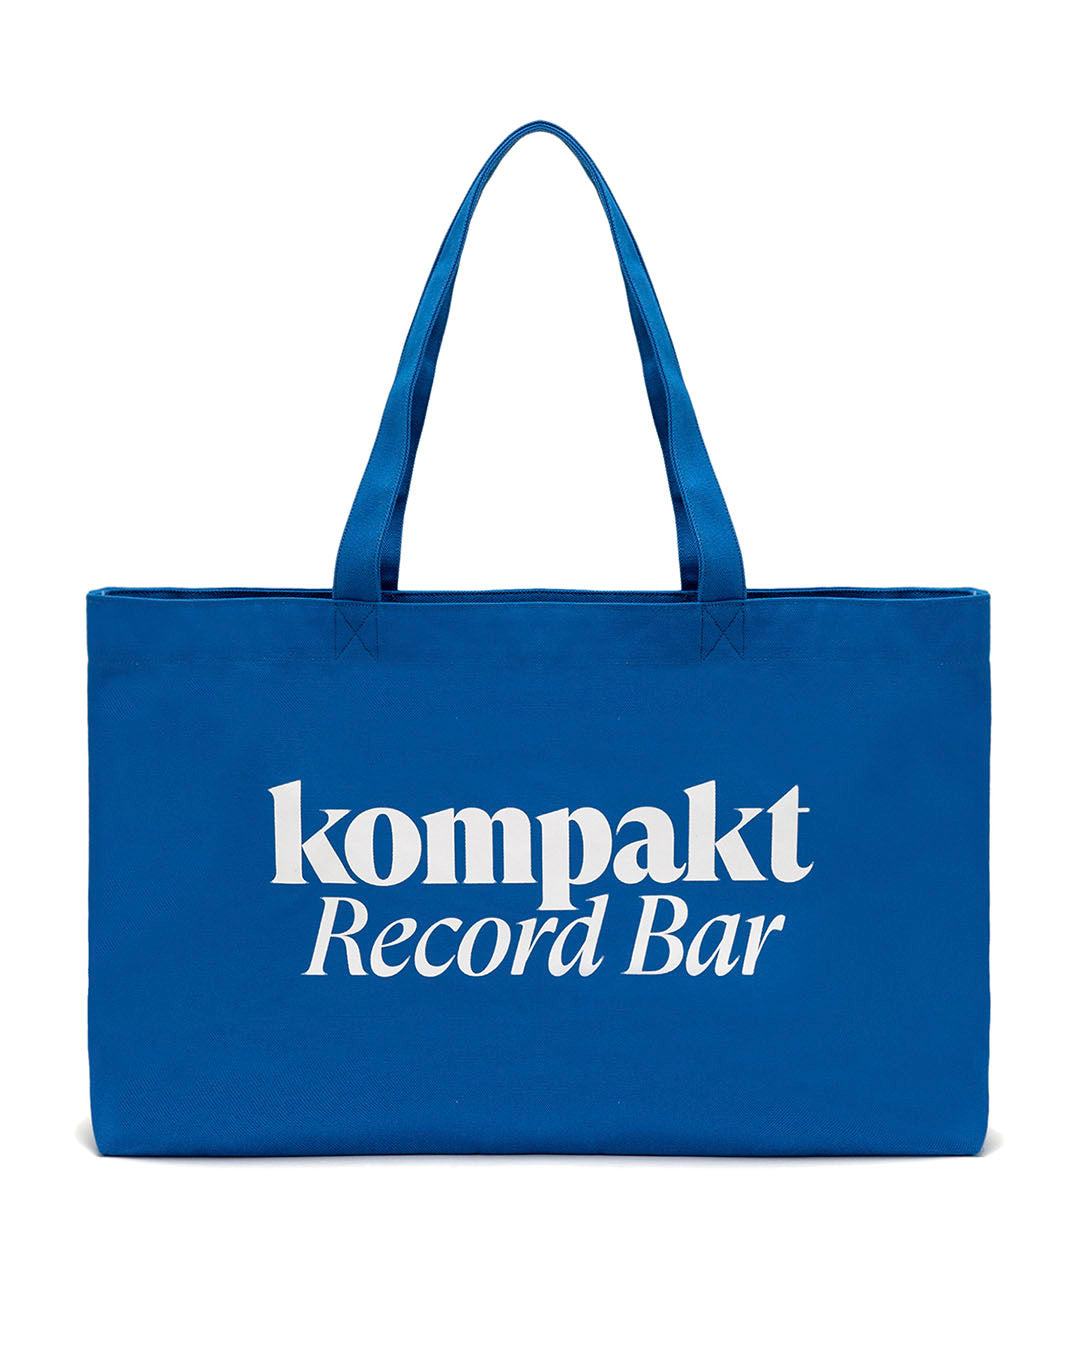 【KOMPAKT RECORD BAR】KRB LOGO TOTE BAG - BLUE